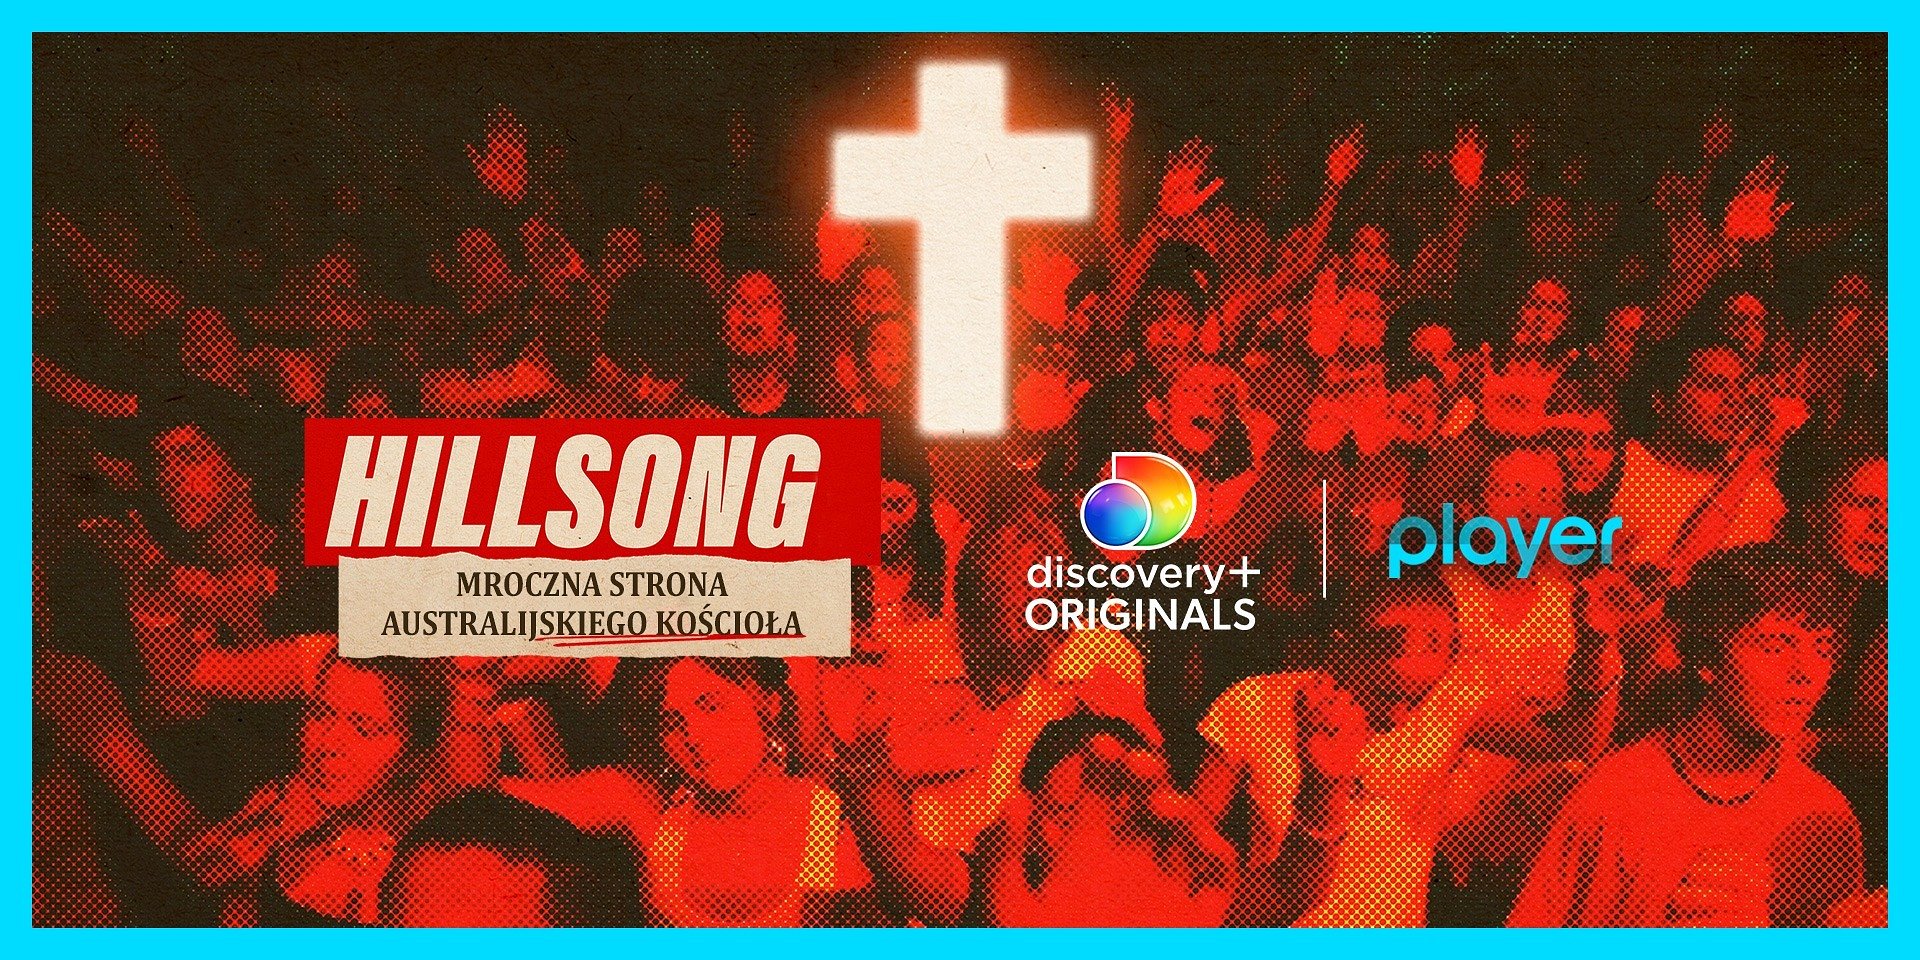 Szokujący serial “Hillsong: mroczna strona australijskiego kościoła” już w Player! Jakie tajemnice odkrywa?